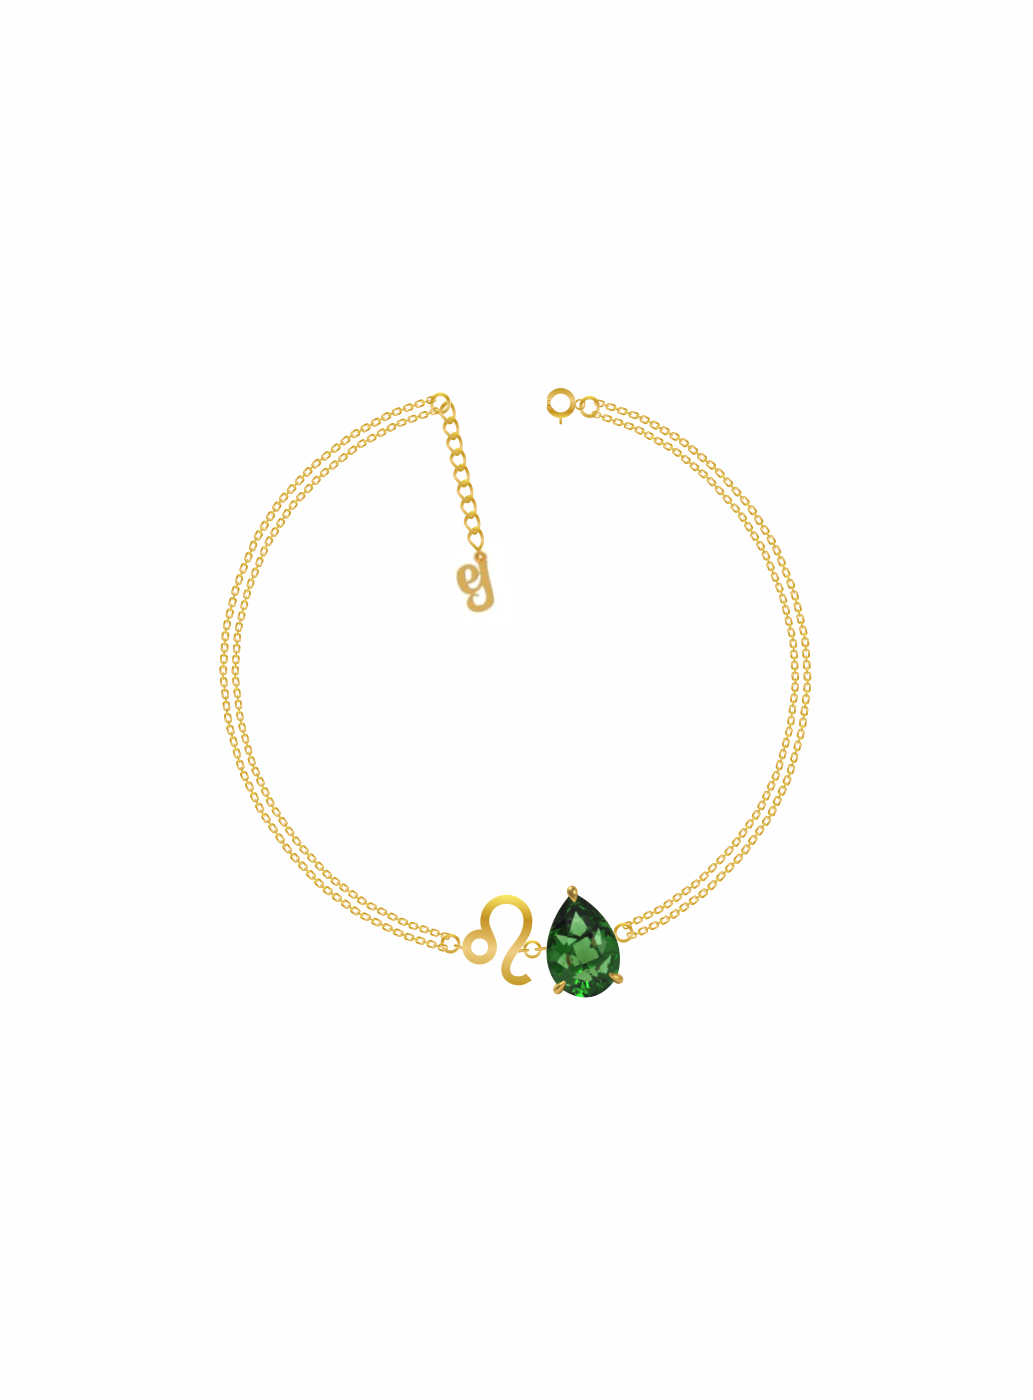 zodiac sign bracelet- leo- gold